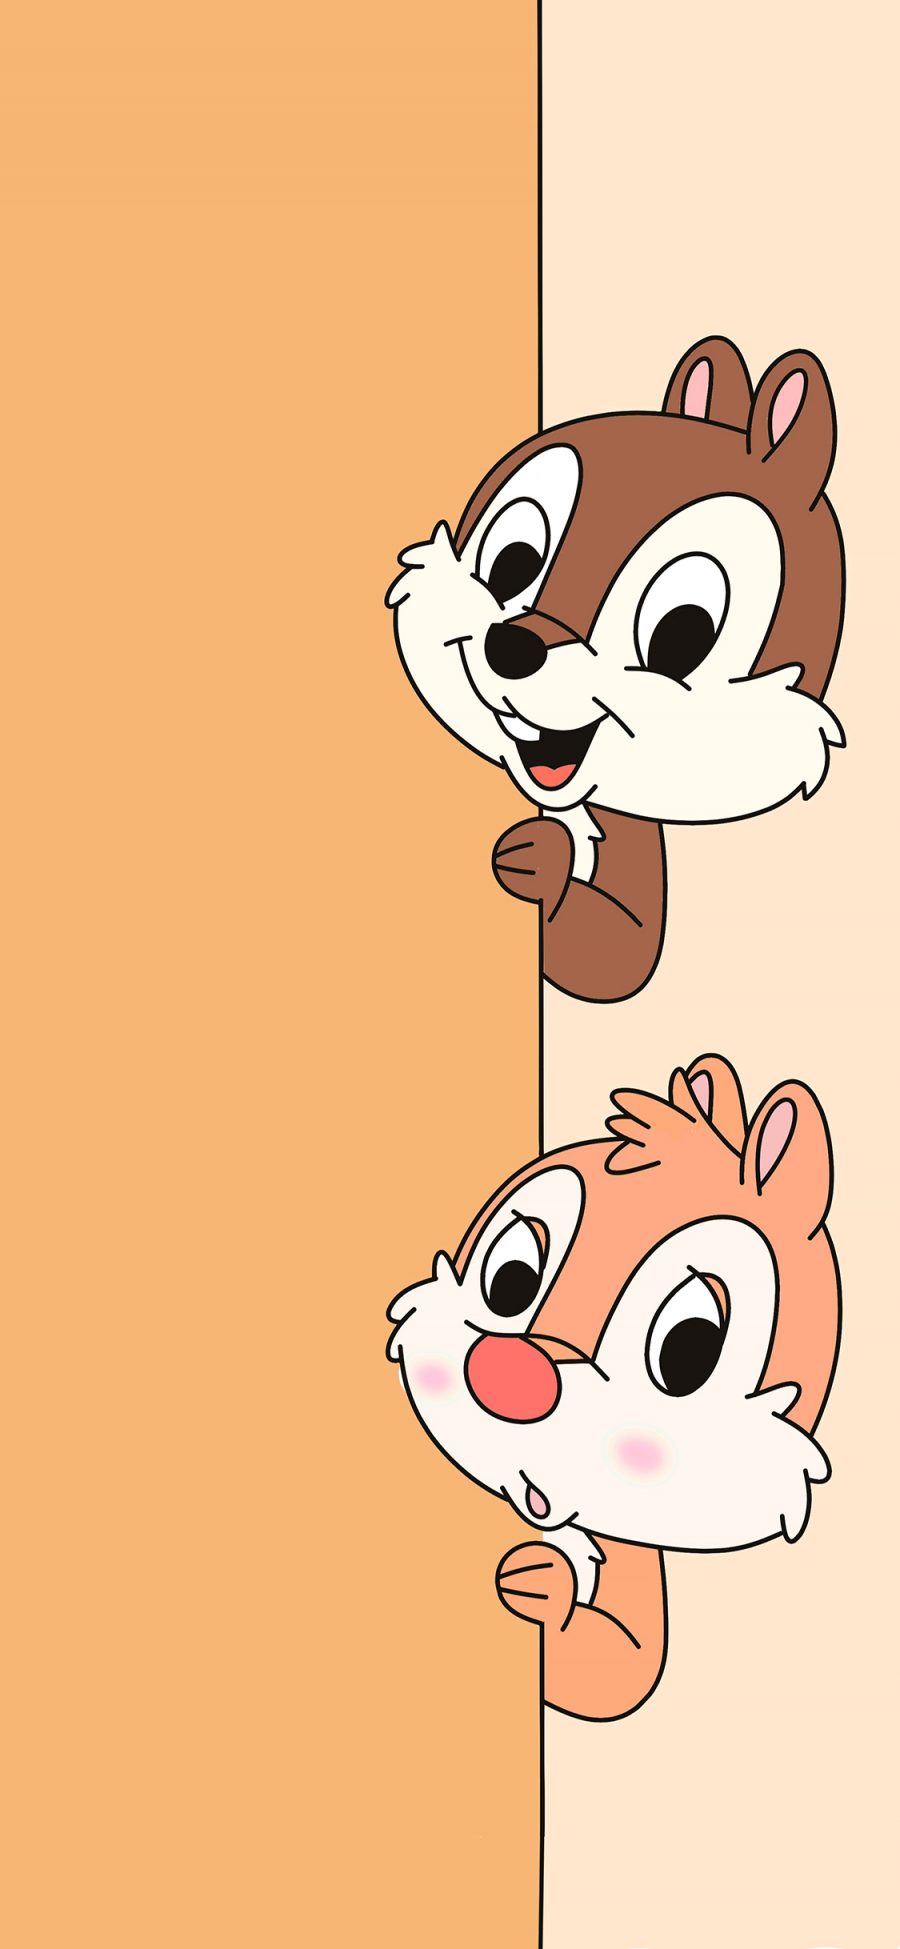 [2436×1125]奇奇和蒂蒂 花栗鼠 大兵布鲁托 动画 迪士尼 苹果手机动漫壁纸图片